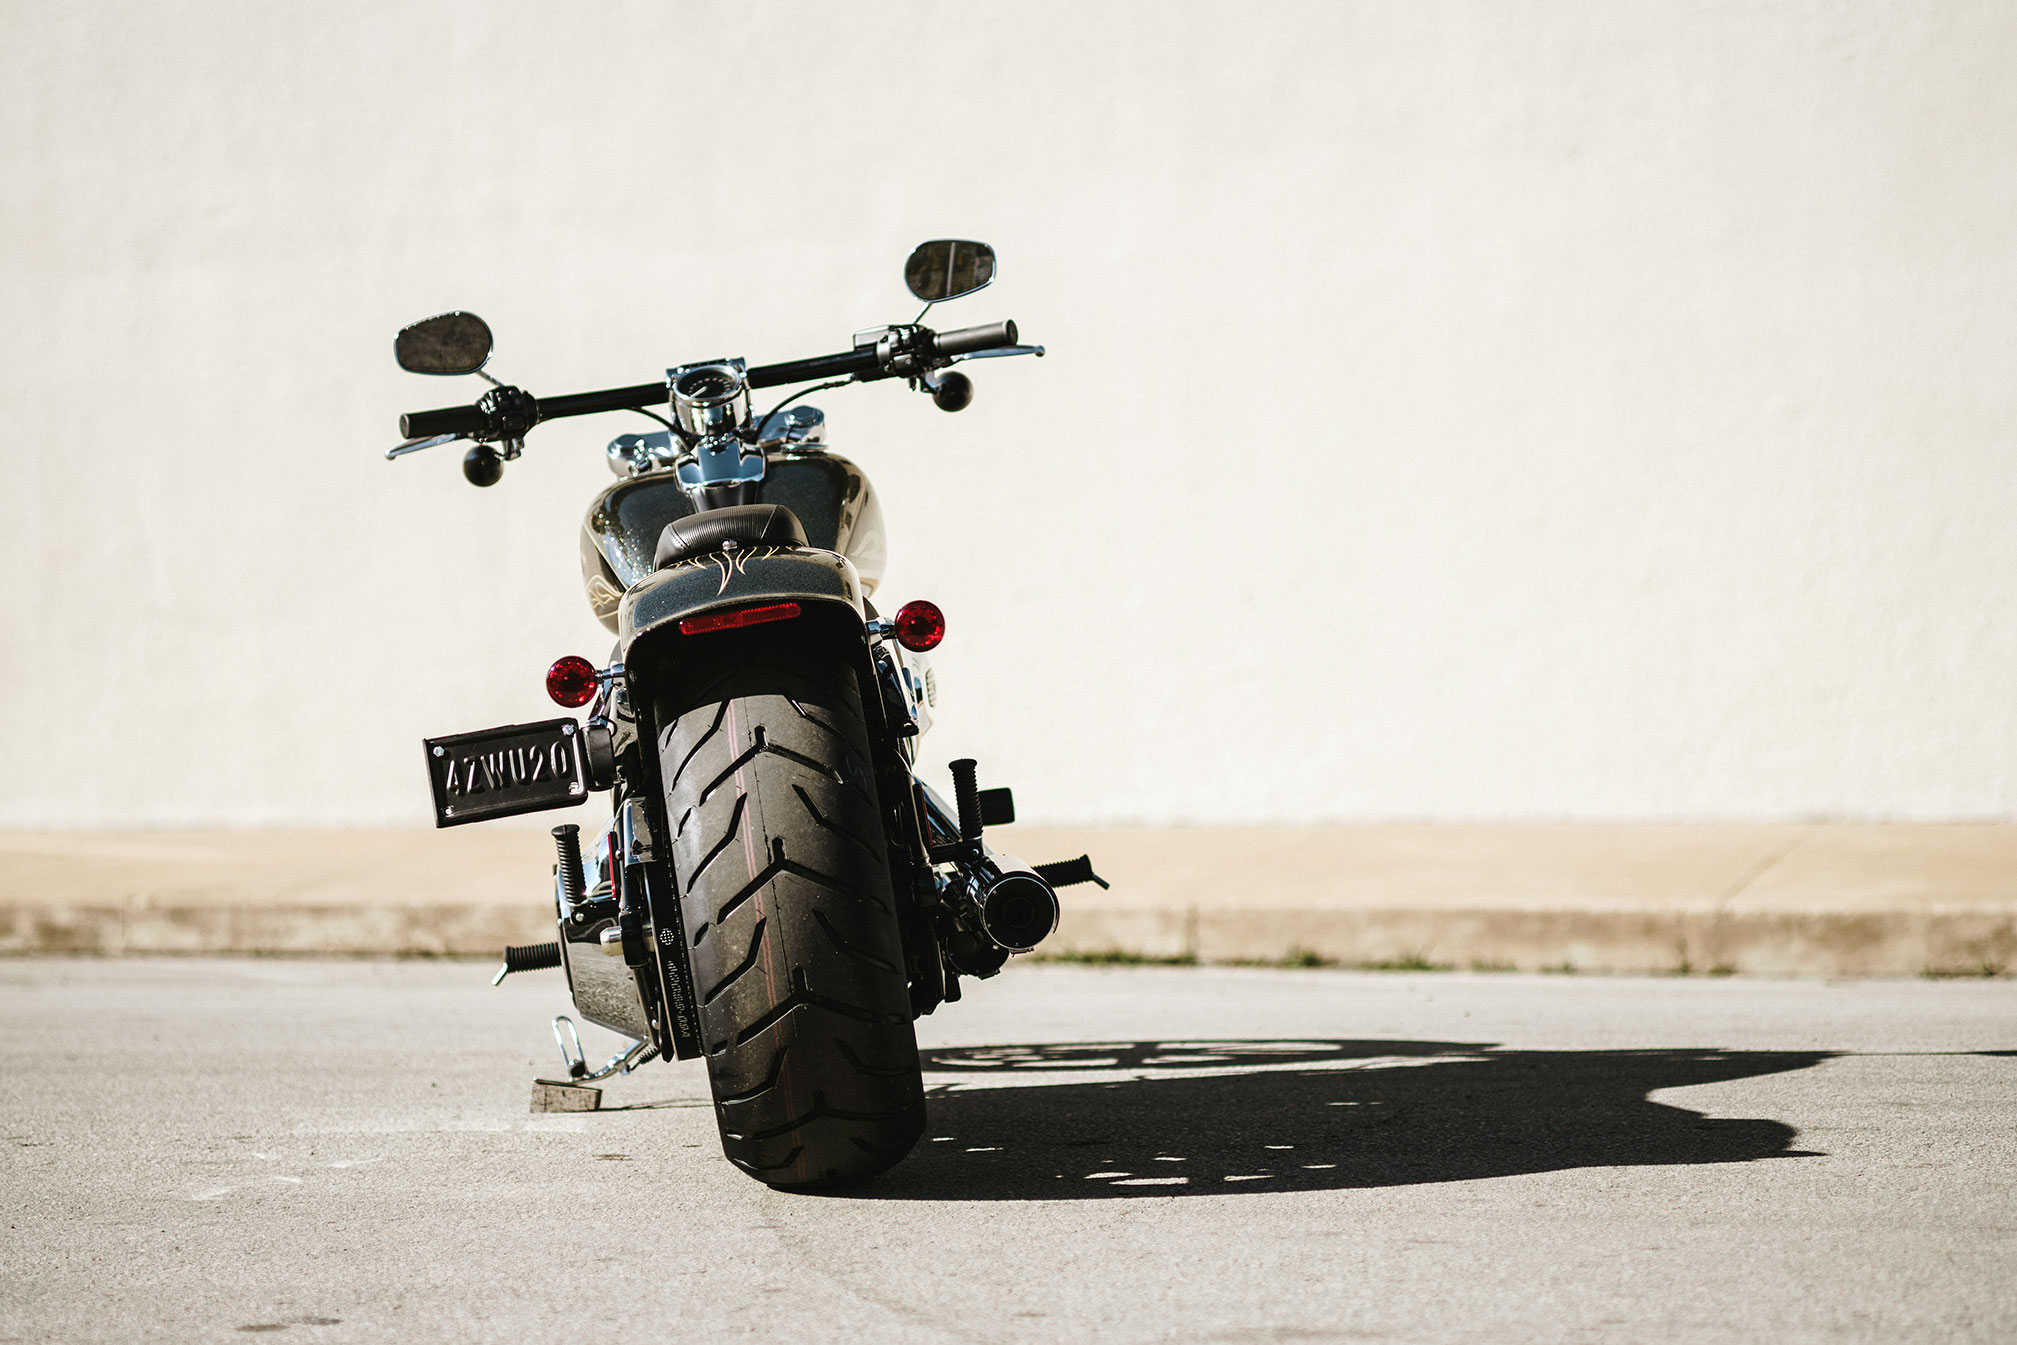 Скачать обои Прорыв Harley Davidson на телефон бесплатно